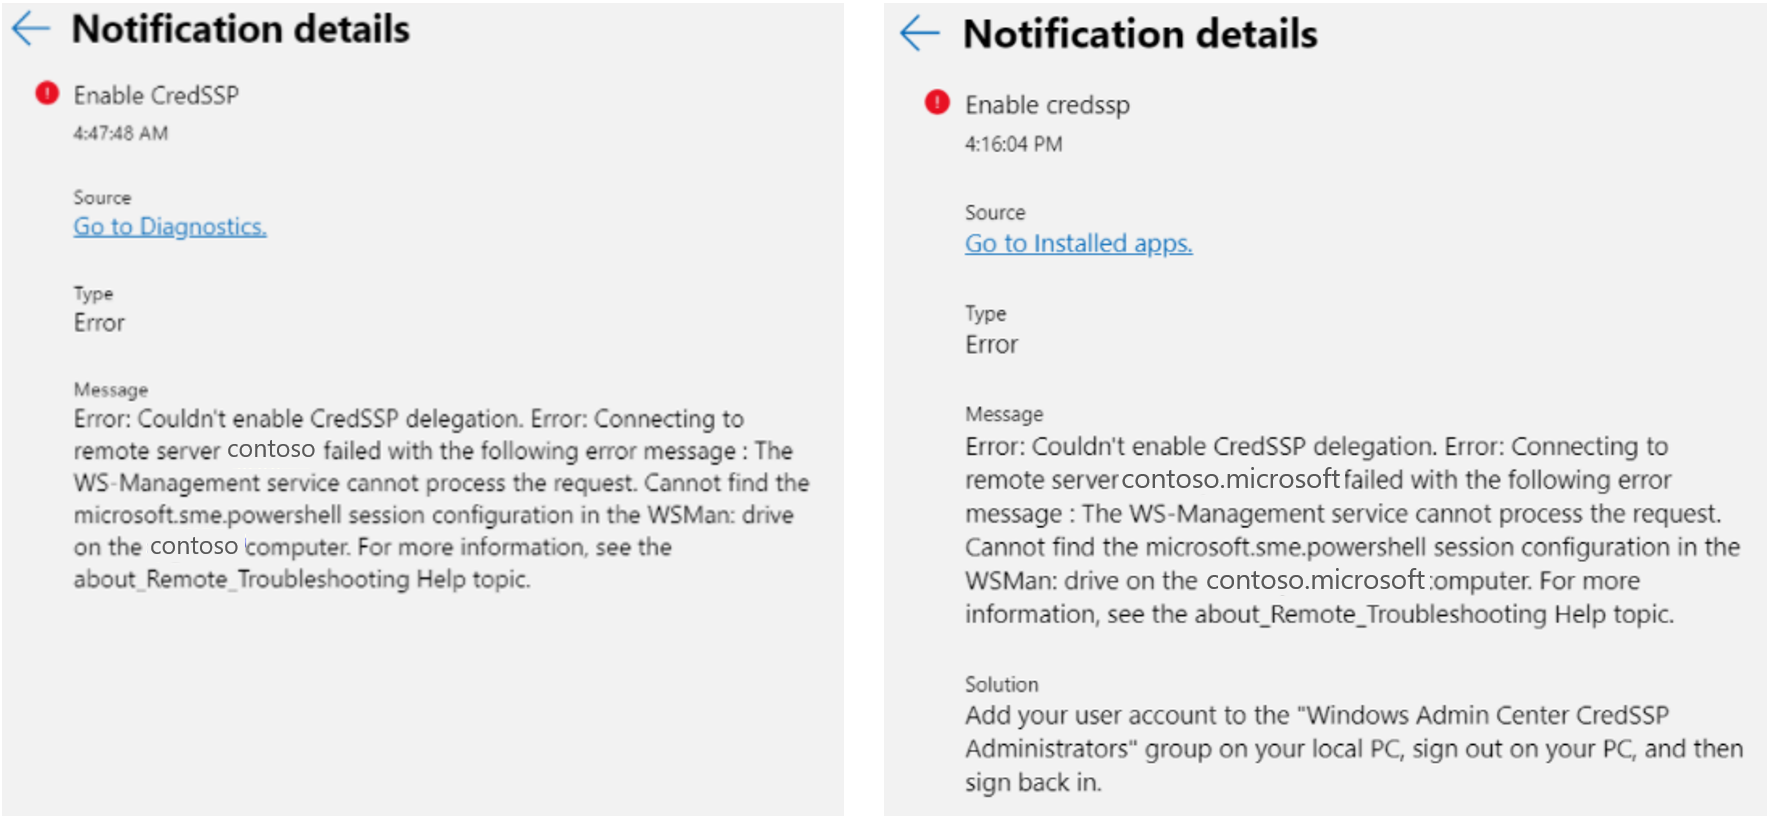 Comparaison côte à côte de la notification d'erreur de permission de point de terminaison pour Cred S S P dans Windows Admin Center.